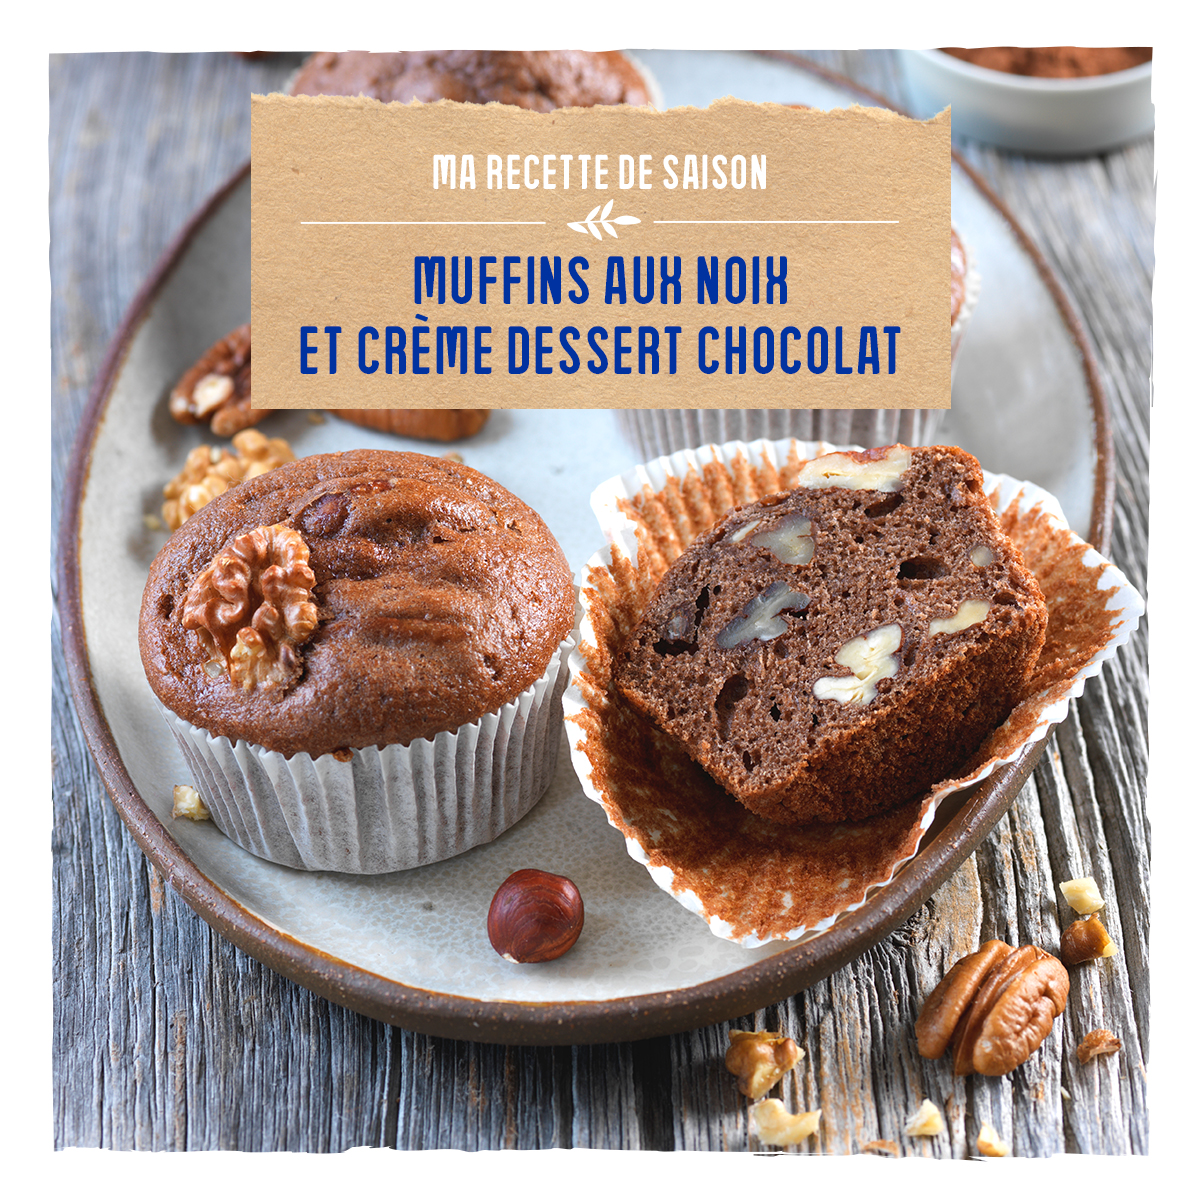 Muffins au noix et crème dessert chocolat